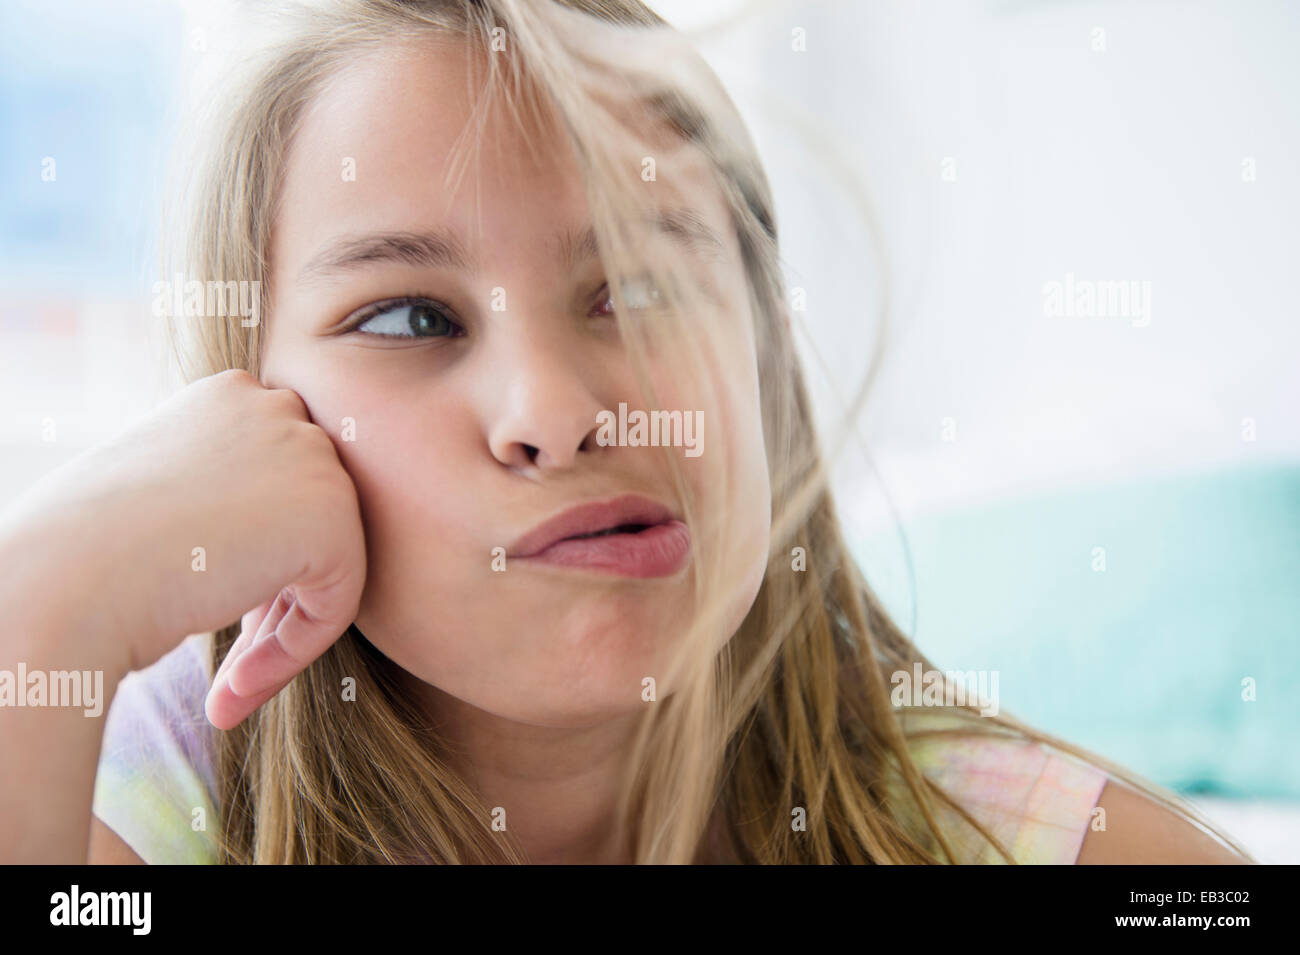 Young Girl blowing cheveux de son visage Banque D'Images